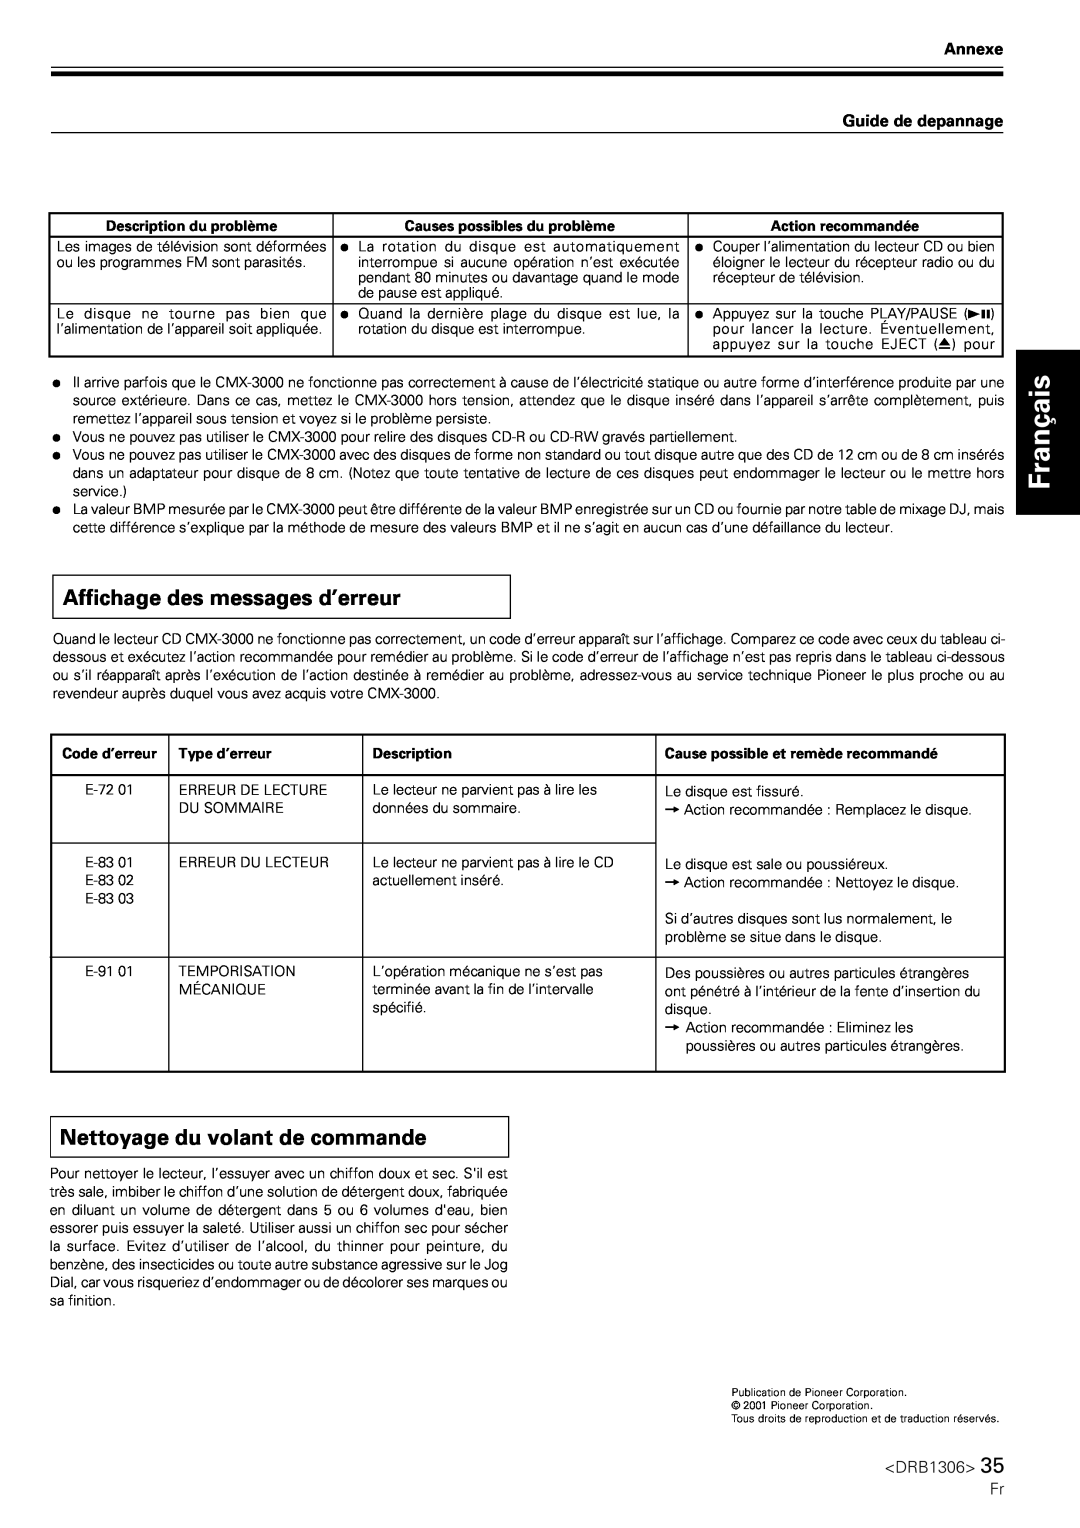 Pioneer CMX-3000 Affichage des messages d’erreur, Nettoyage du volant de commande, Français, Annexe Guide de depannage 